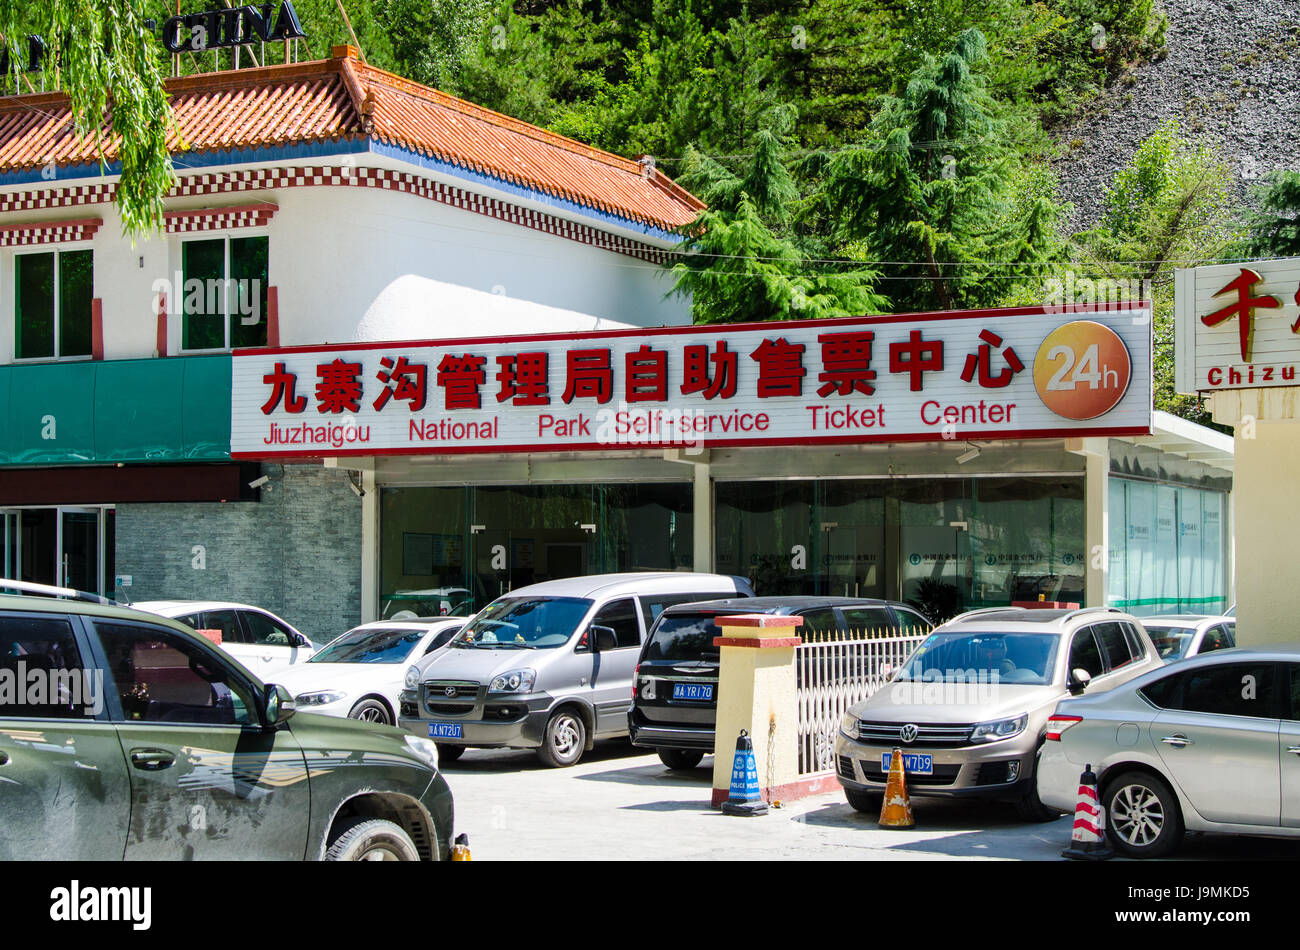 Eine Kasse für den Nationalk-Park finden Sie in der Hauptstraße von Jiuzhaigou, Sichuan, China Stockfoto